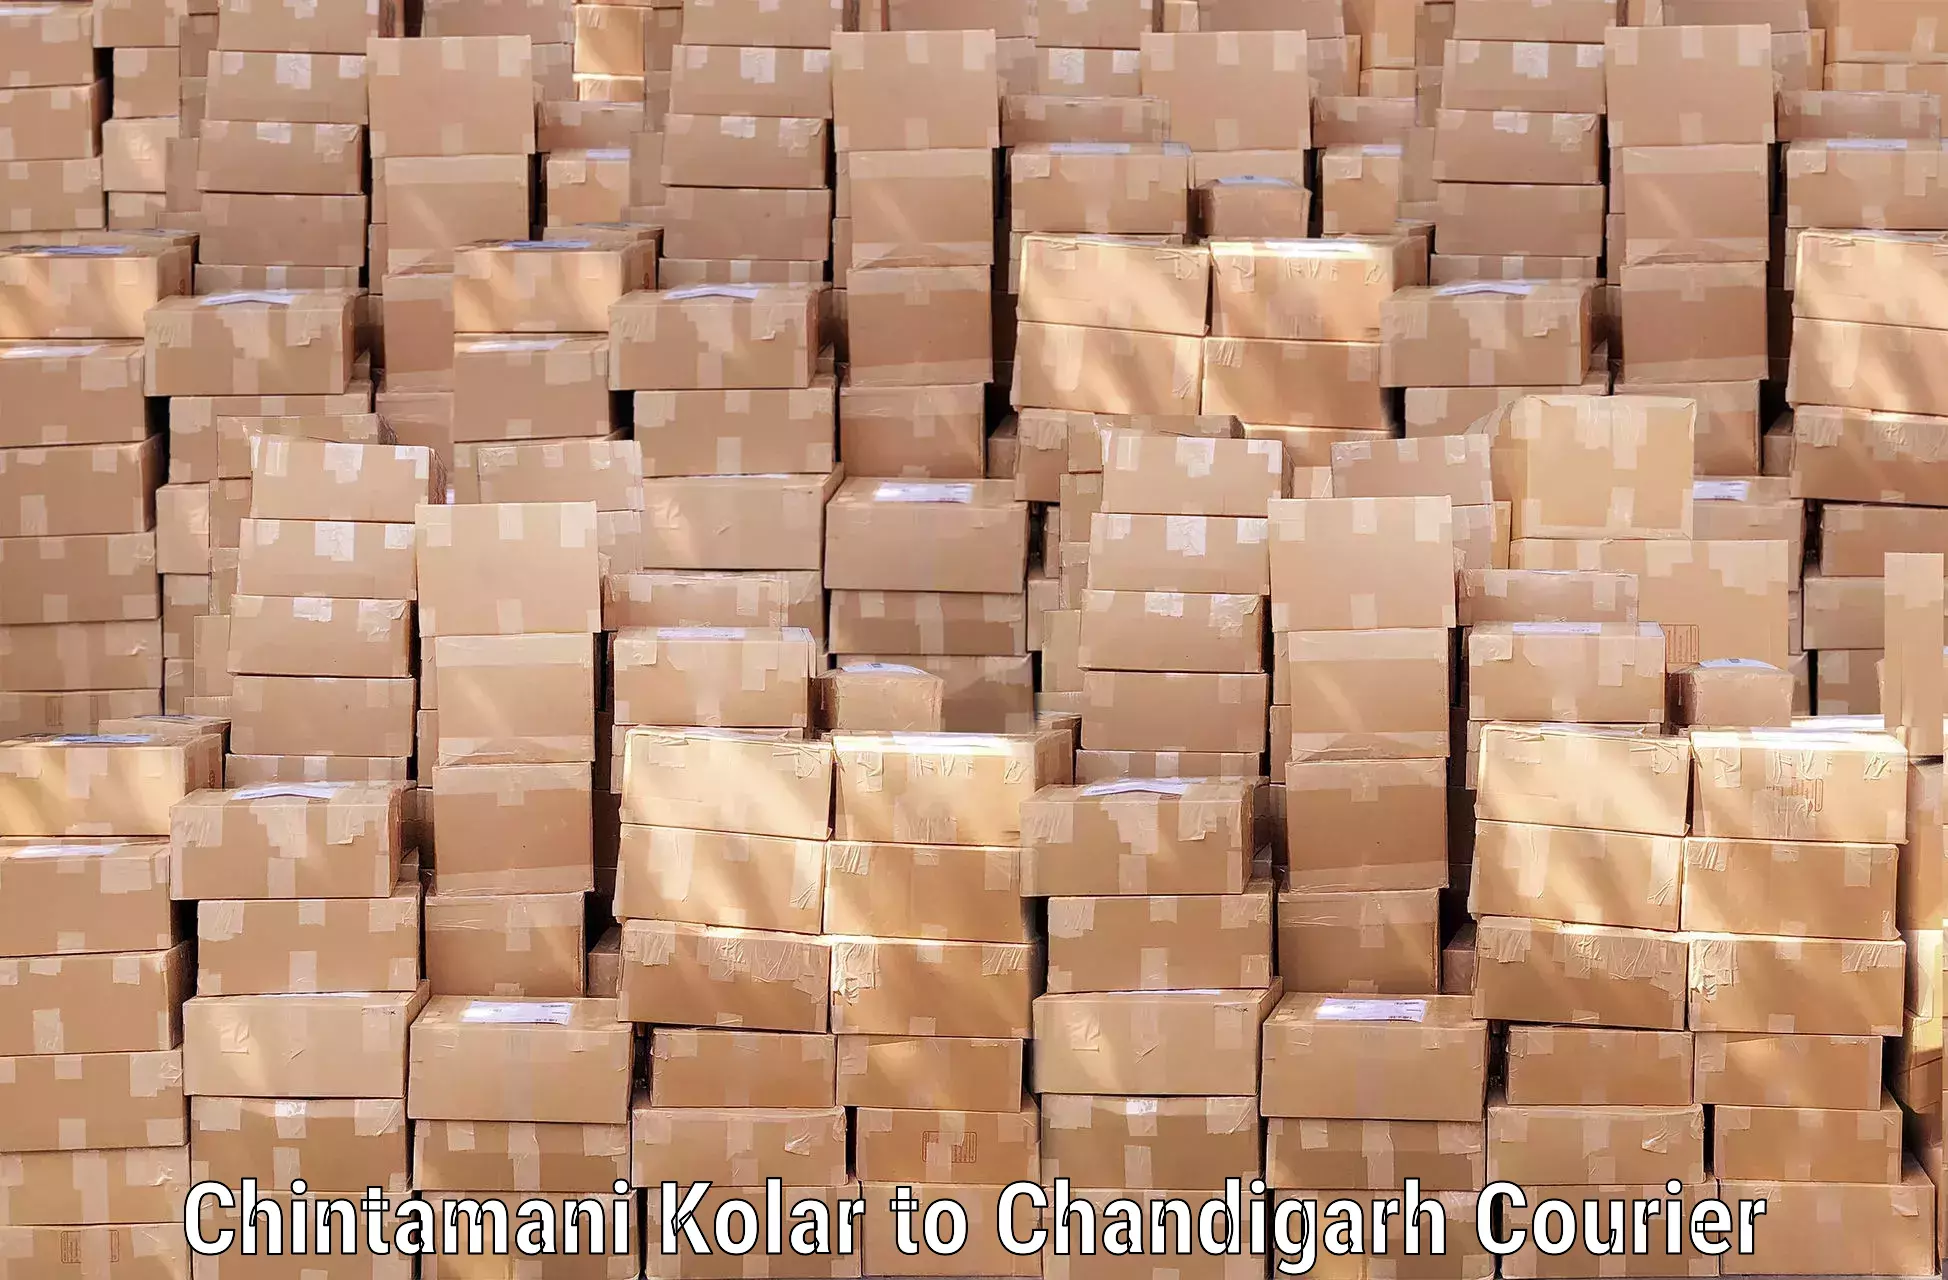 Rural baggage transport Chintamani Kolar to Chandigarh